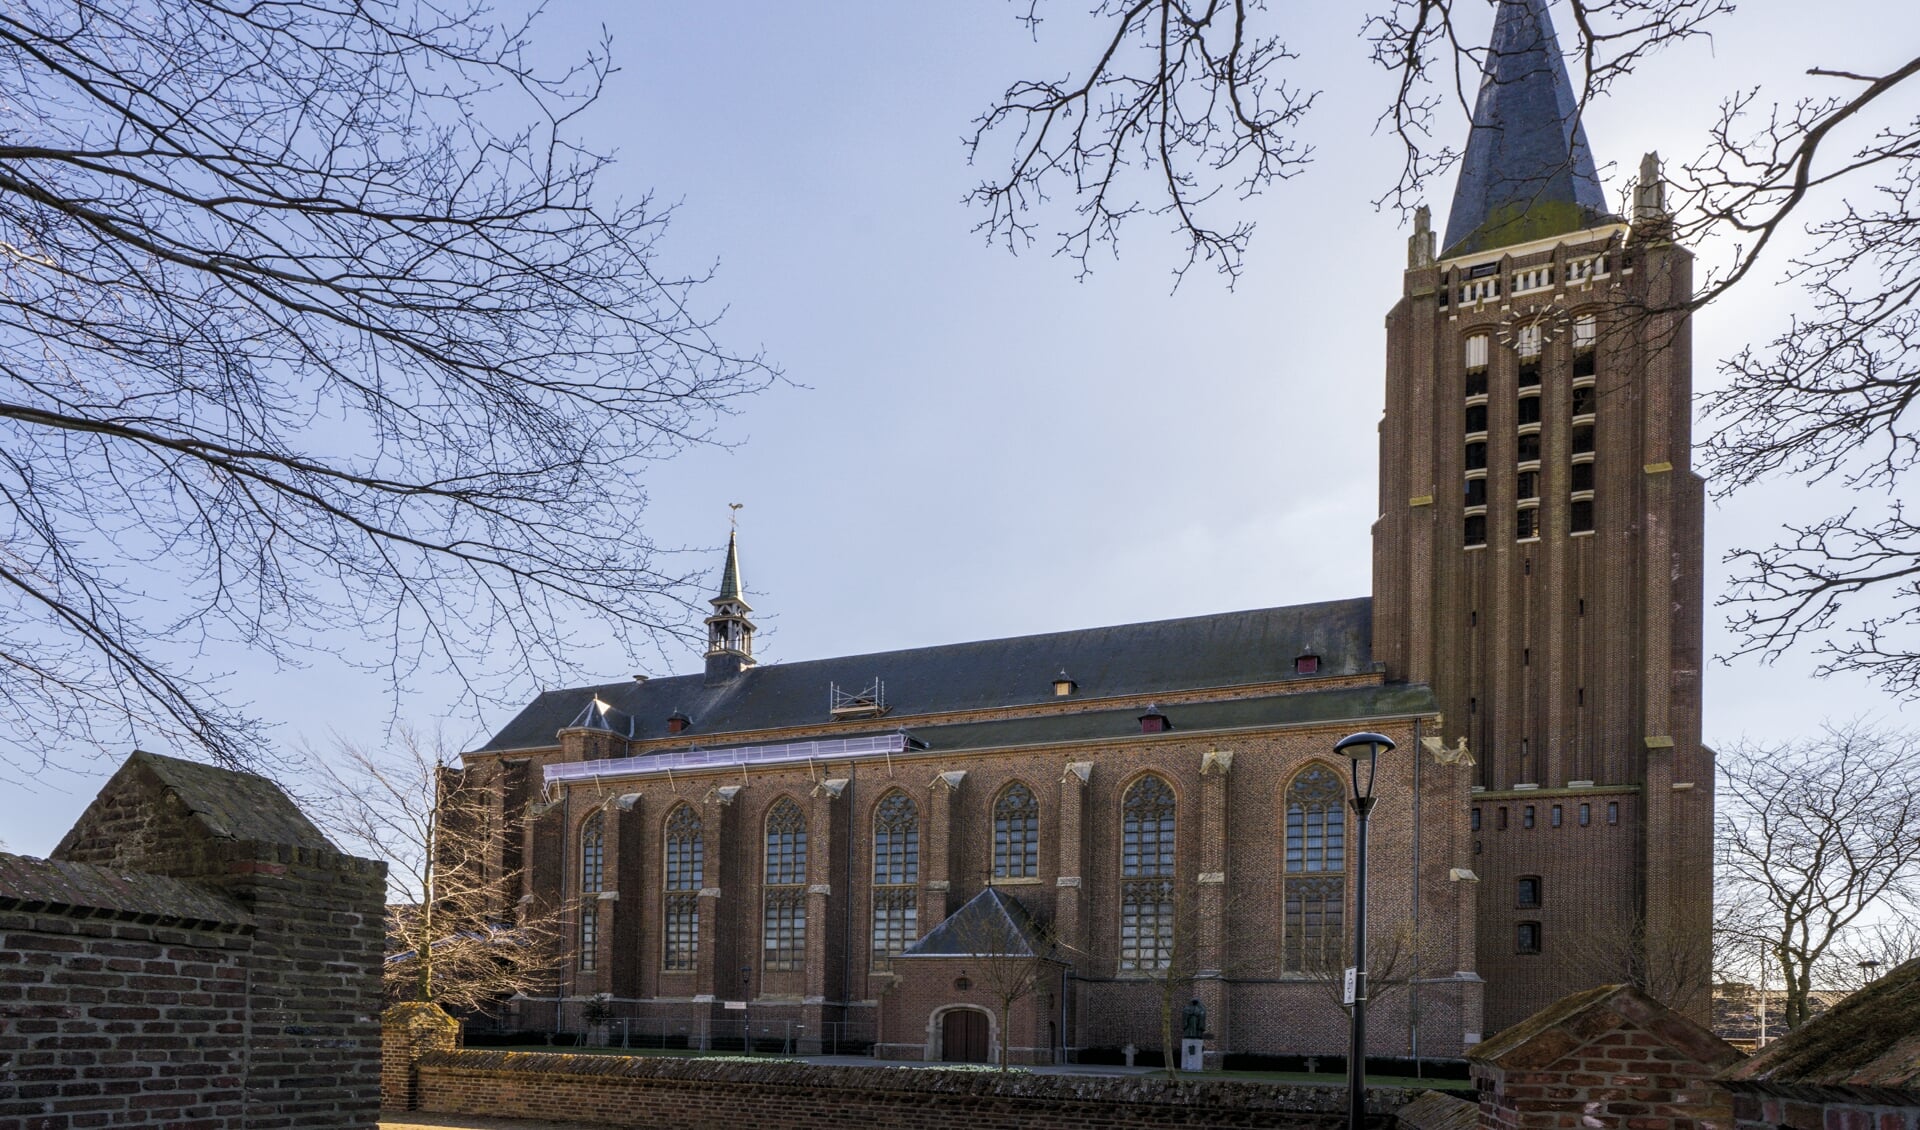 Carillonconcert op 5 mei vanuit de toren van de Grote Kerk.